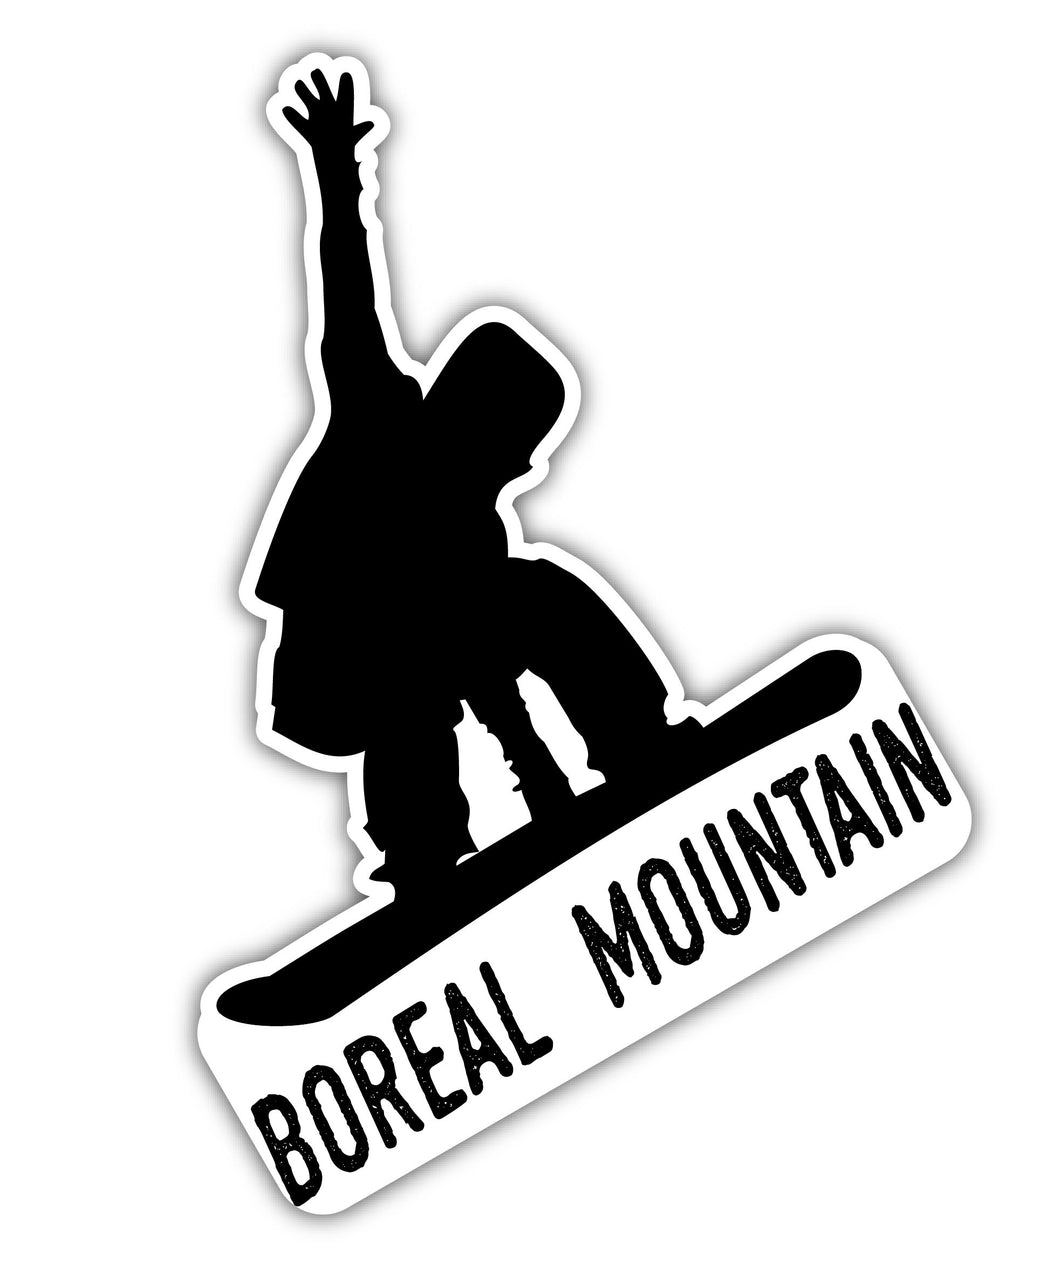 Boreal Mountain California Ski Adventures Souvenir Approximately 5 x 2.5-Inch Vinyl Decal Sticker Goggle Design